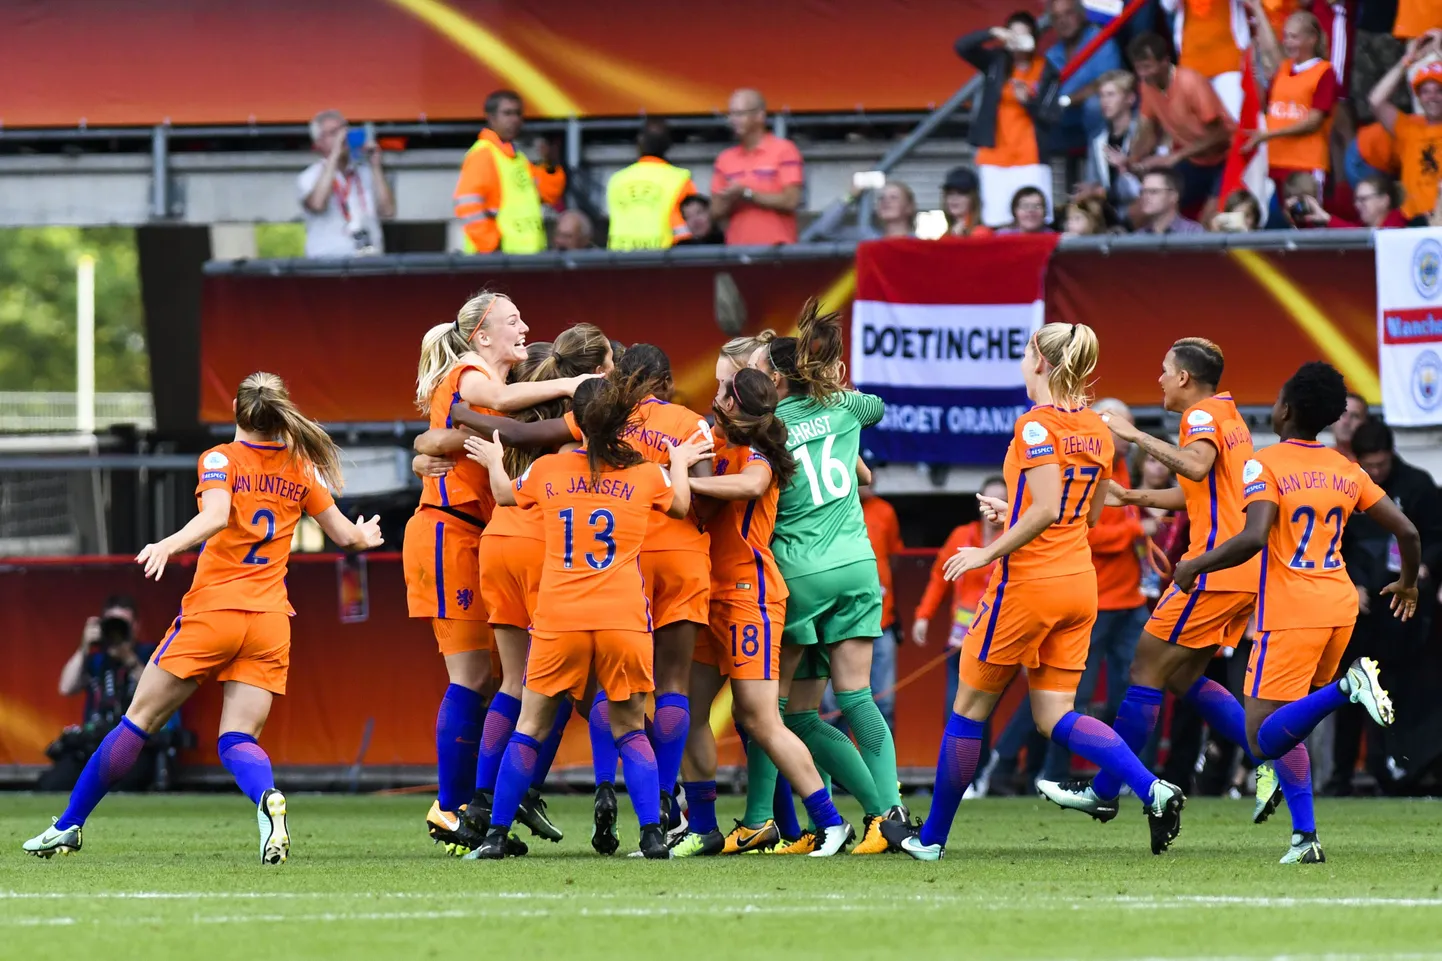 Hollandi koondis Euroopa meistrivõistluste võitu tähistamas.